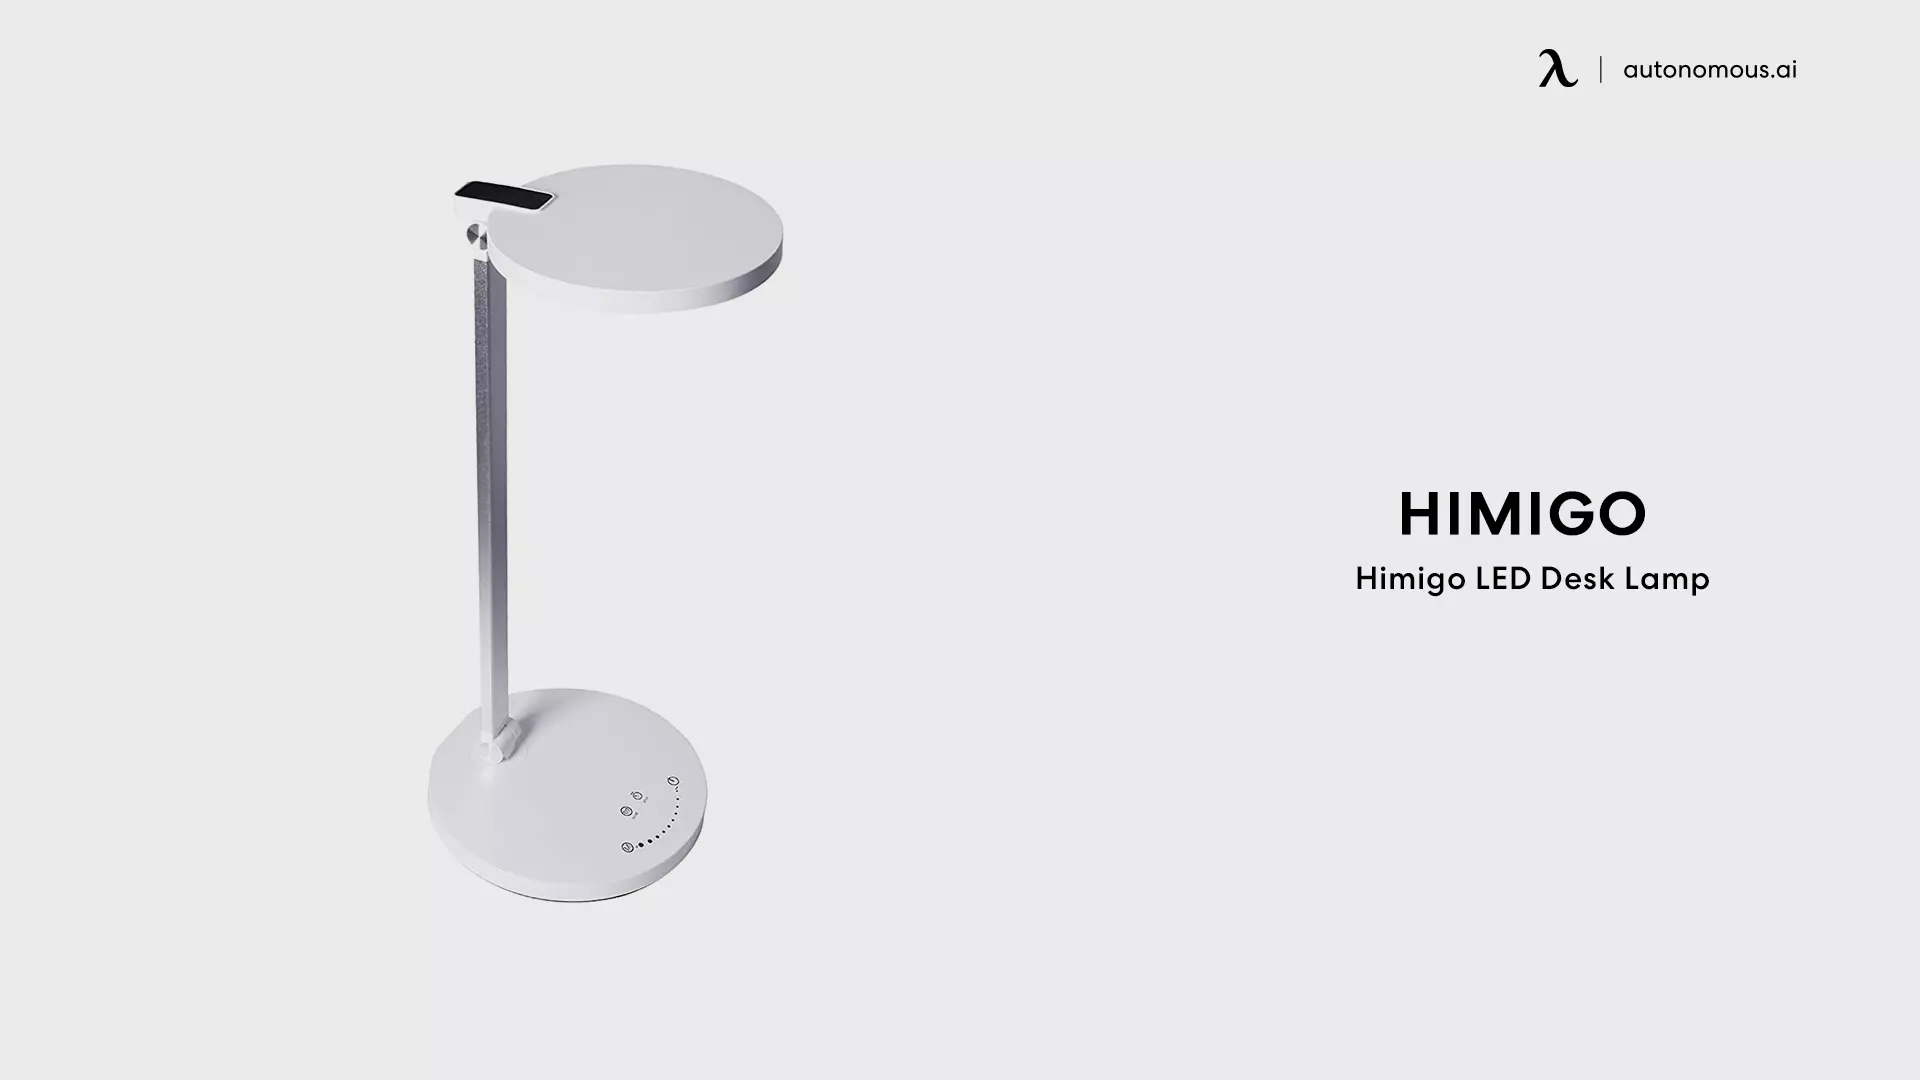 Himigo LED Desk Lamp